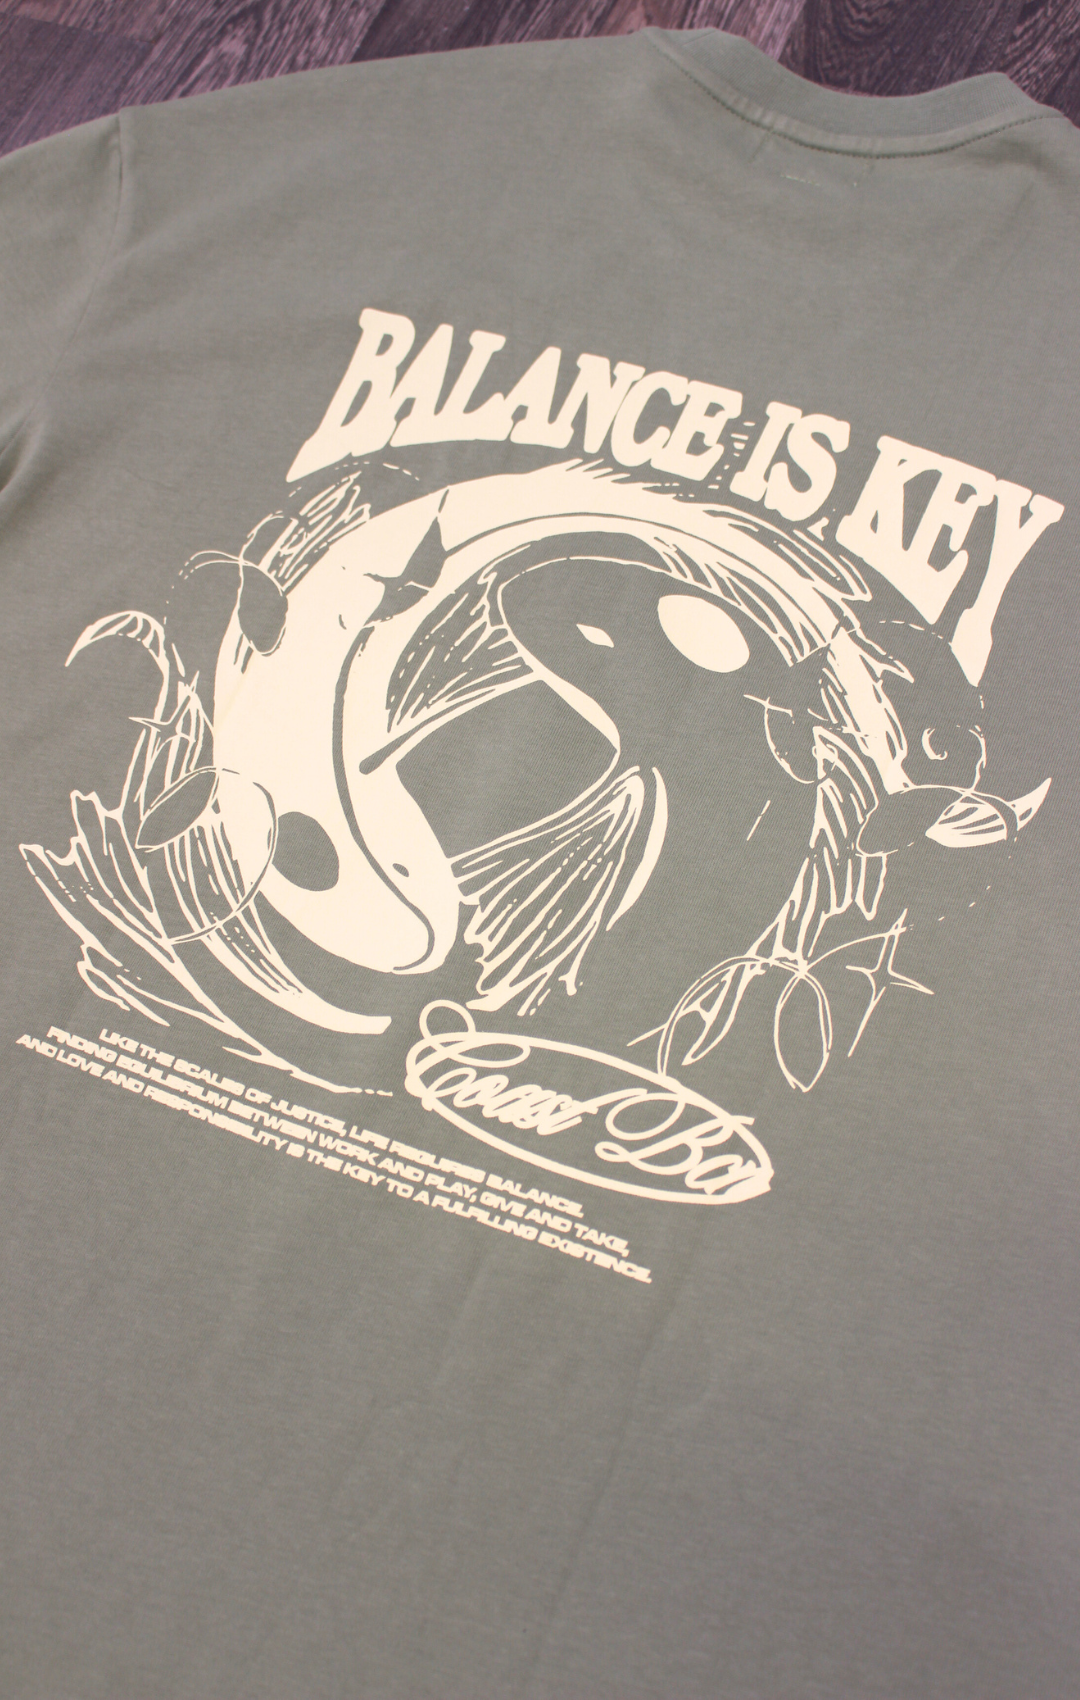 Balance T-shirt CoastBcn